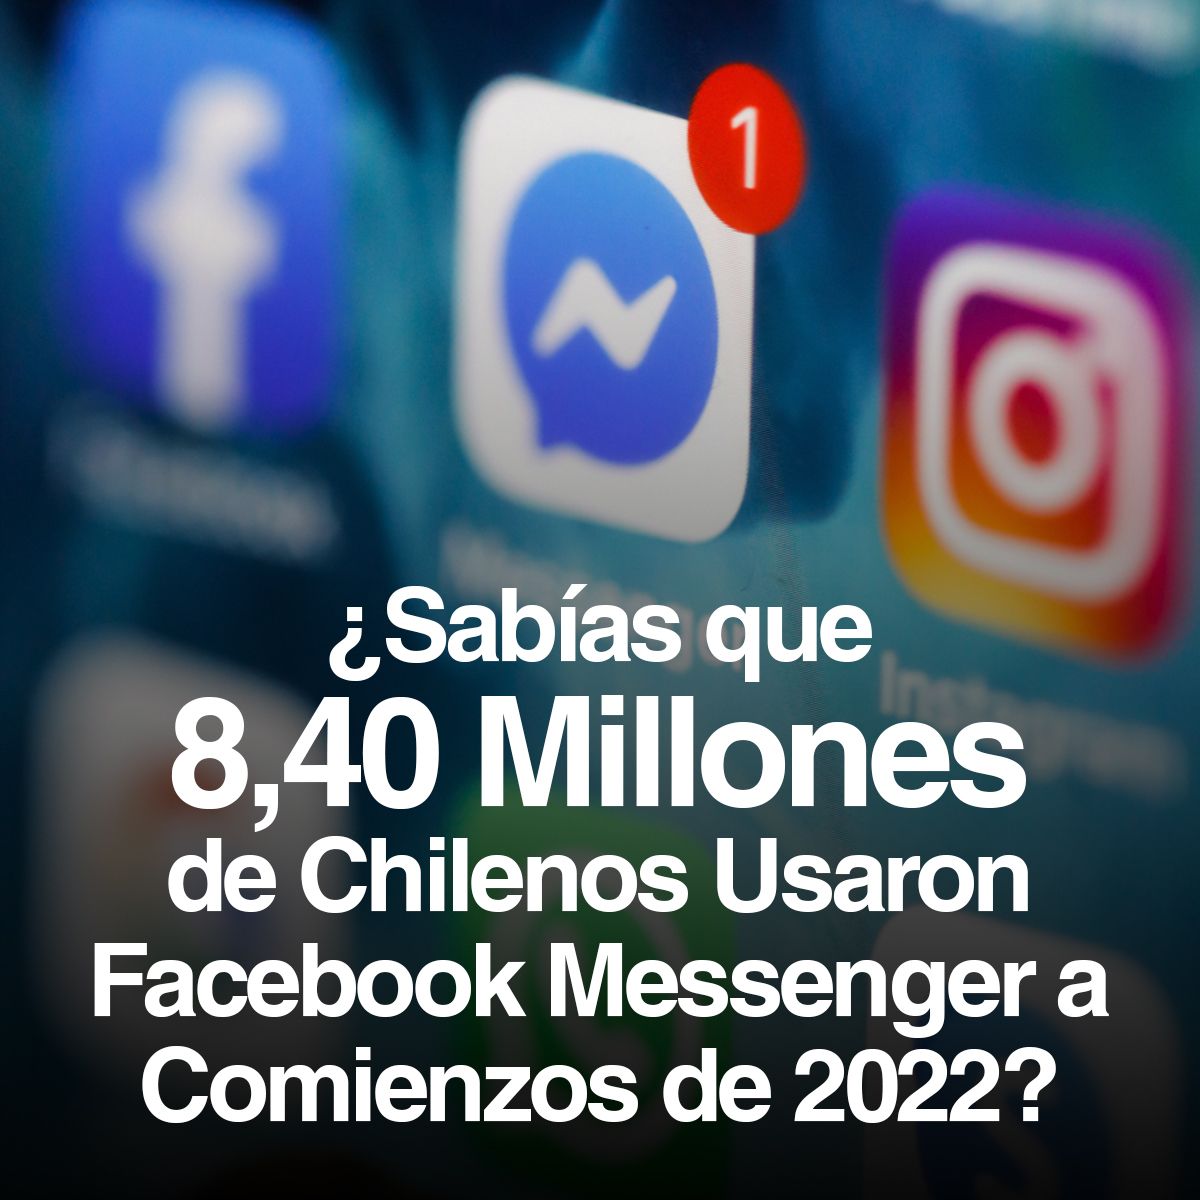 ¿Sabías que 8,40 Millones de Chilenos Usaron Facebook Messenger a Comienzos de 2022?